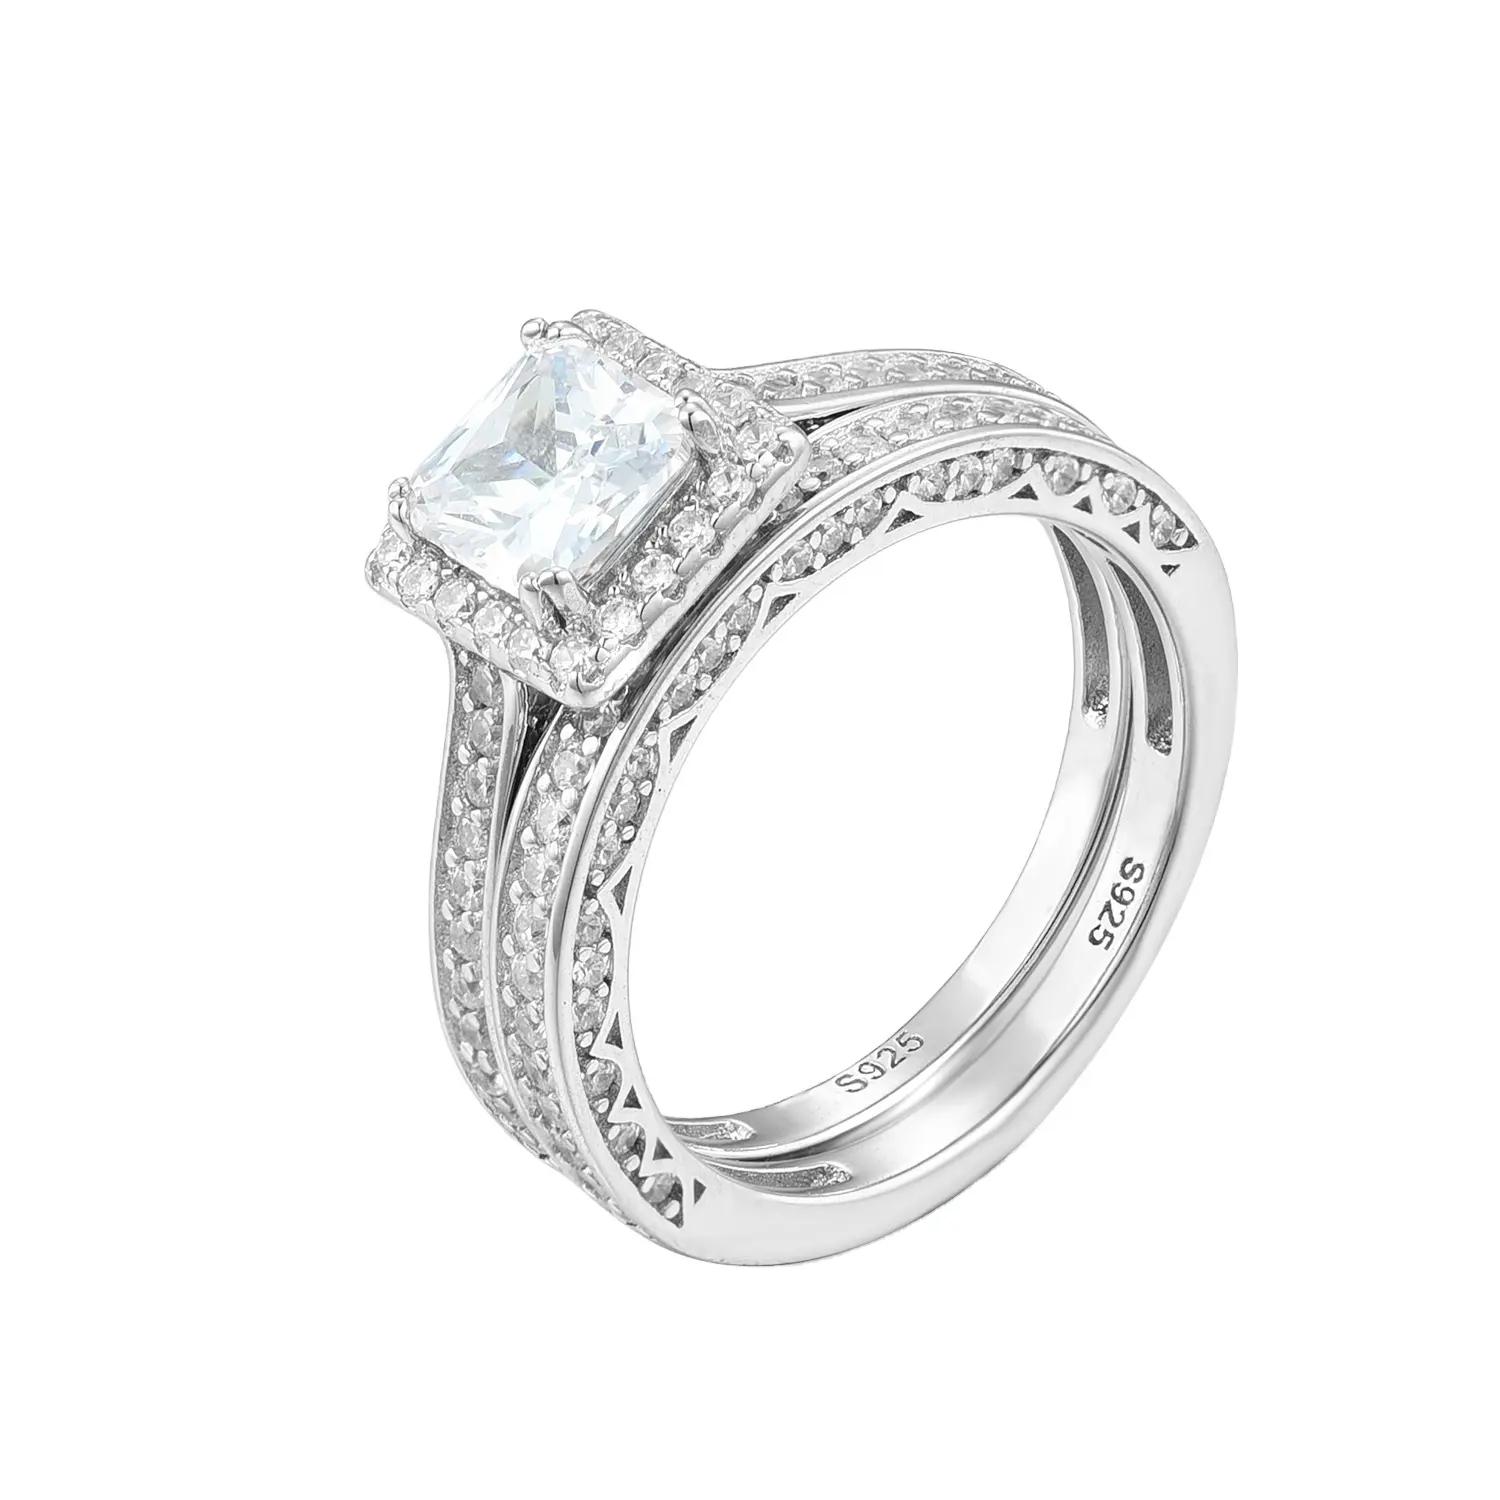 ราคาขายส่งแหวนแต่งงานชุด 925 เงินสเตอร์ลิงแหวนนิรันดร์แหวน Halo Lab แหวนเพชรชุด